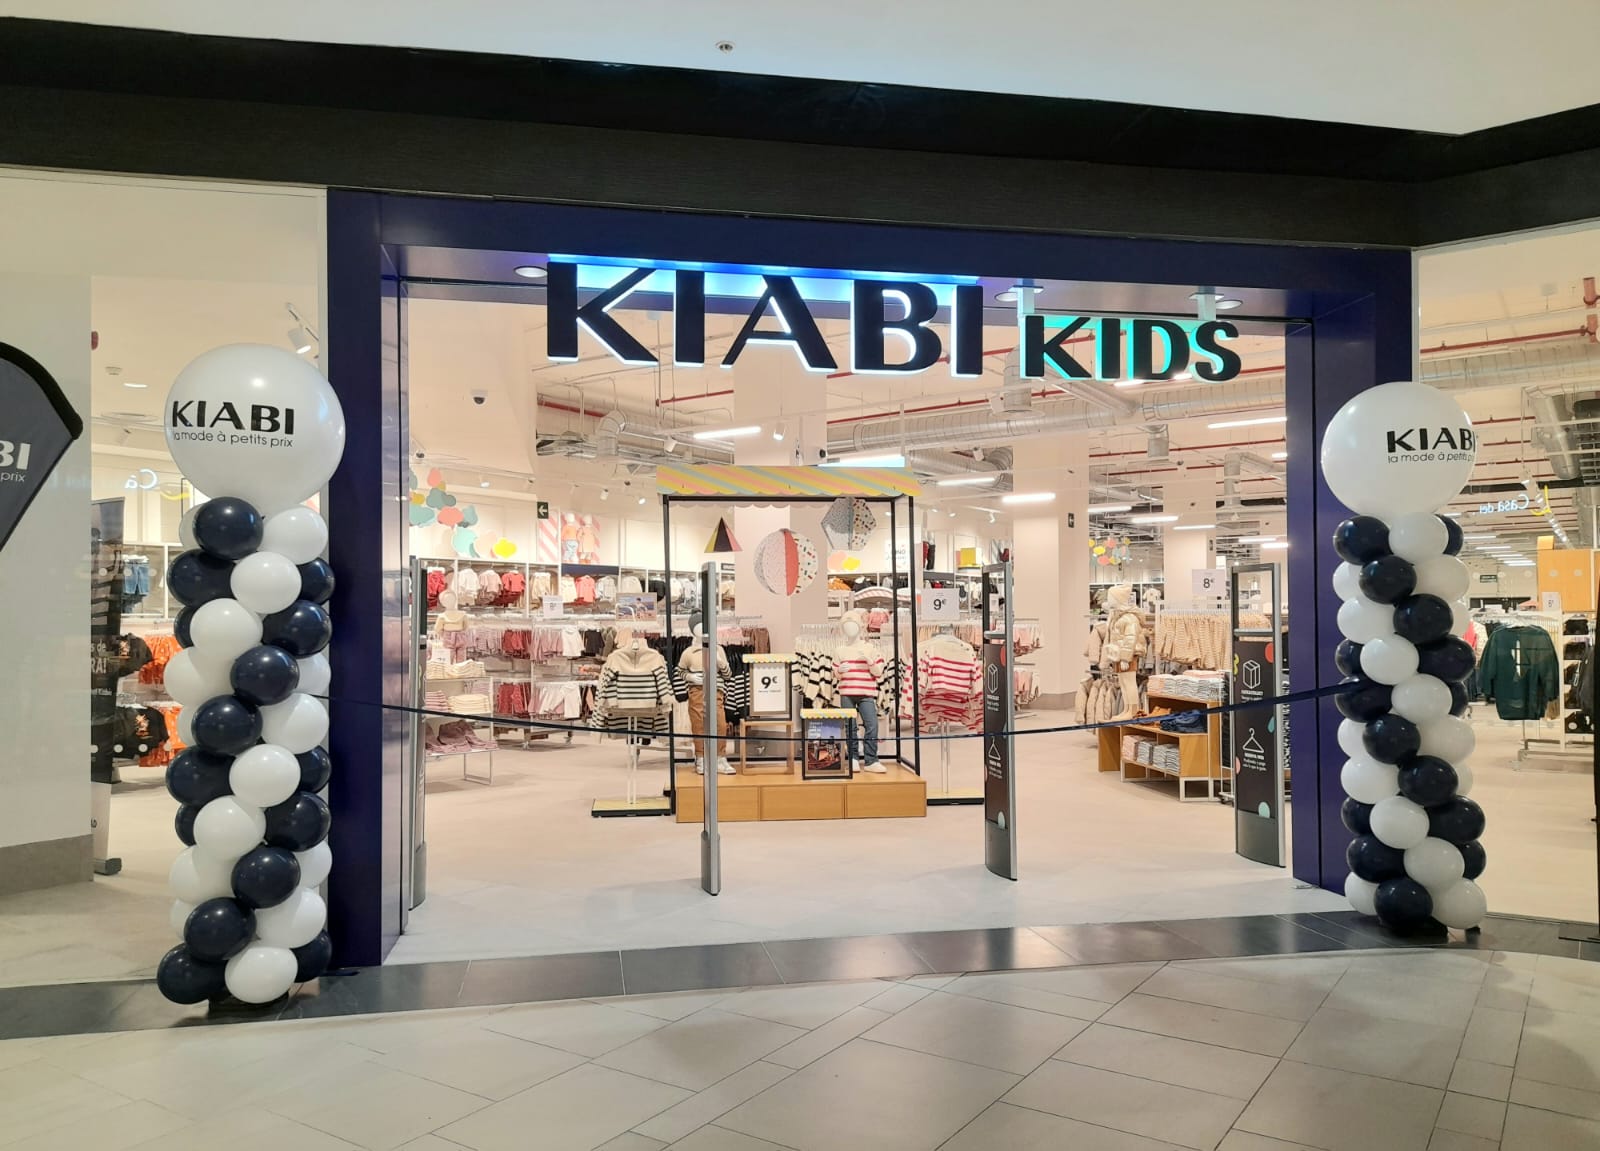 Kiabi consolida su modelo de negocio ‘Kids’ con la apertura de su nueva tienda en Valencia